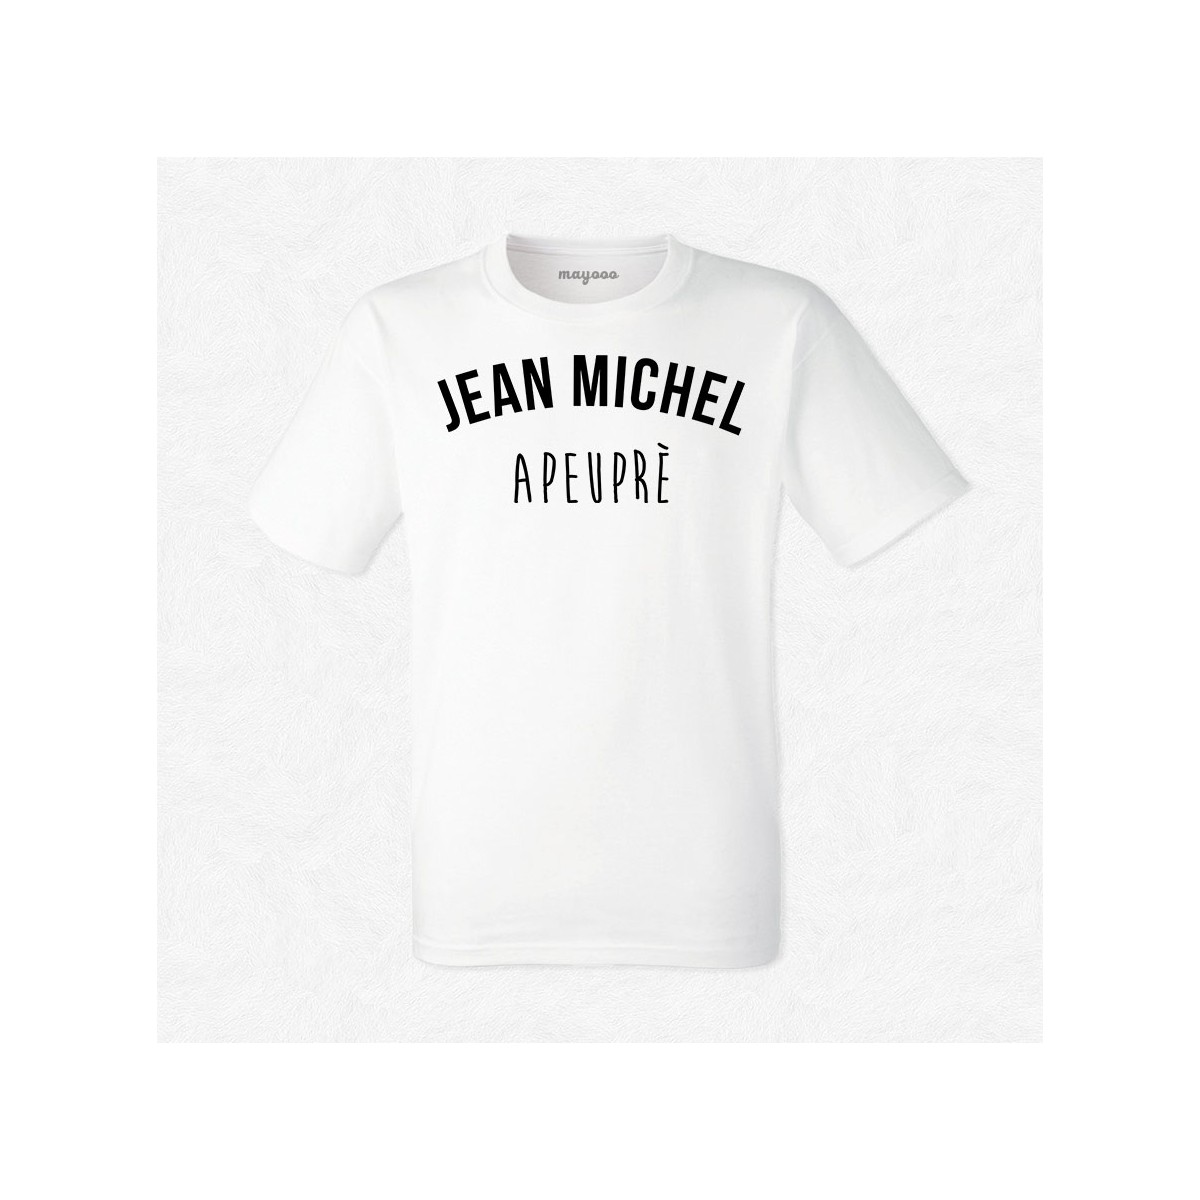 T-shirt Jean Michel apeuprès